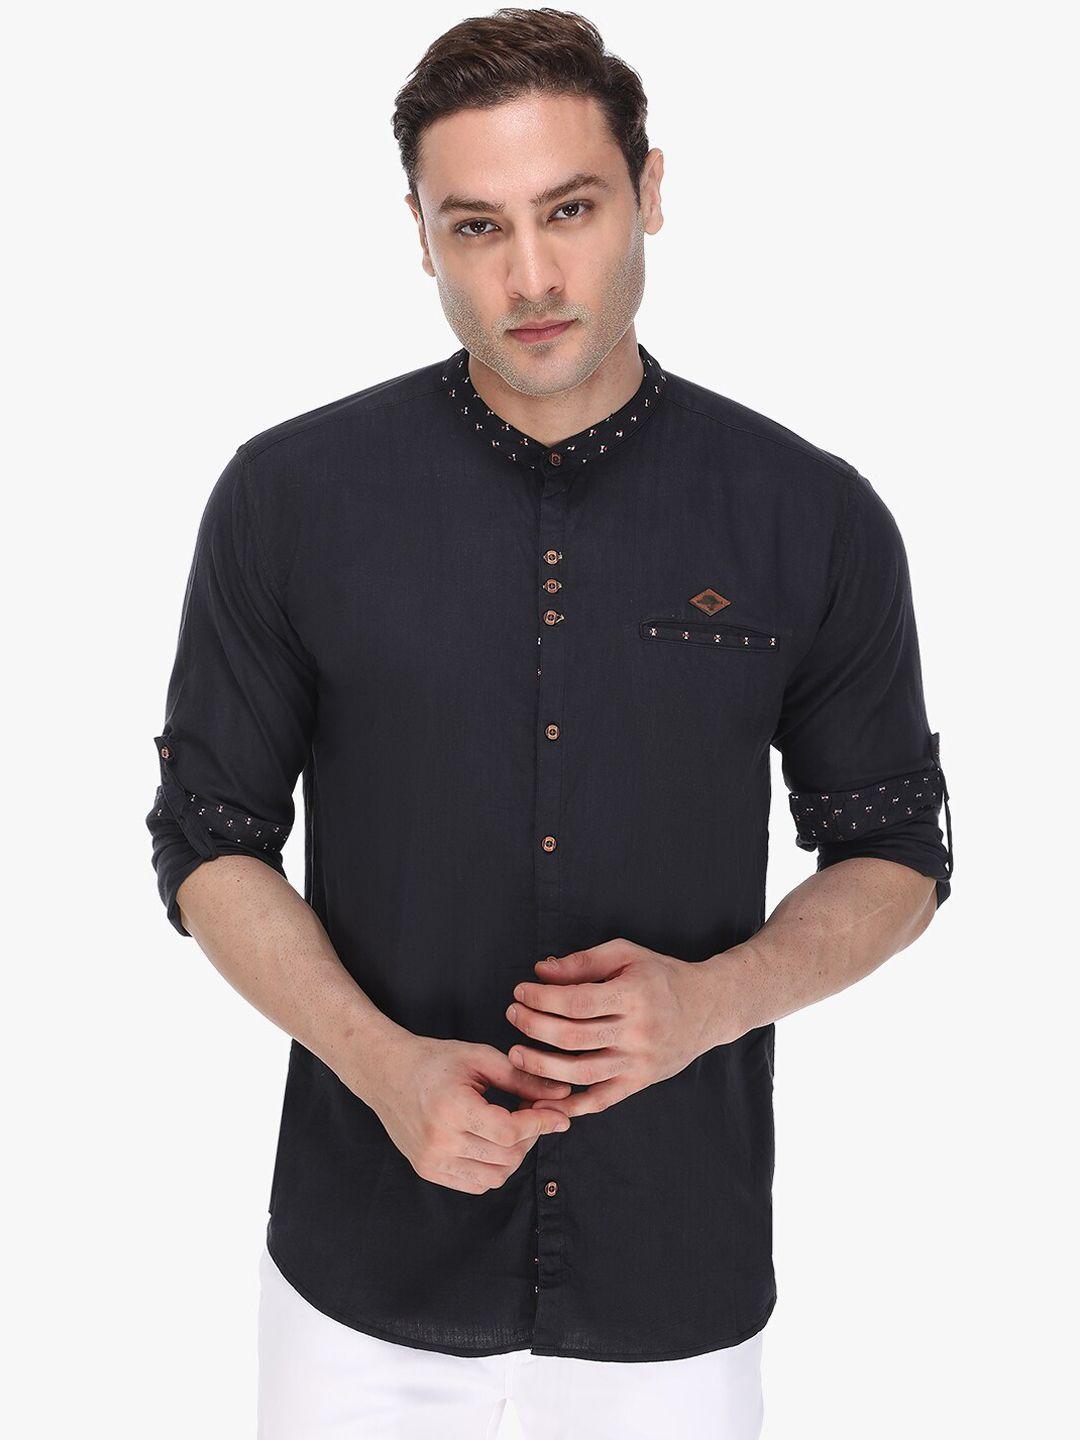 kuons avenue men black slim fit opaque linen cotton casual shirt